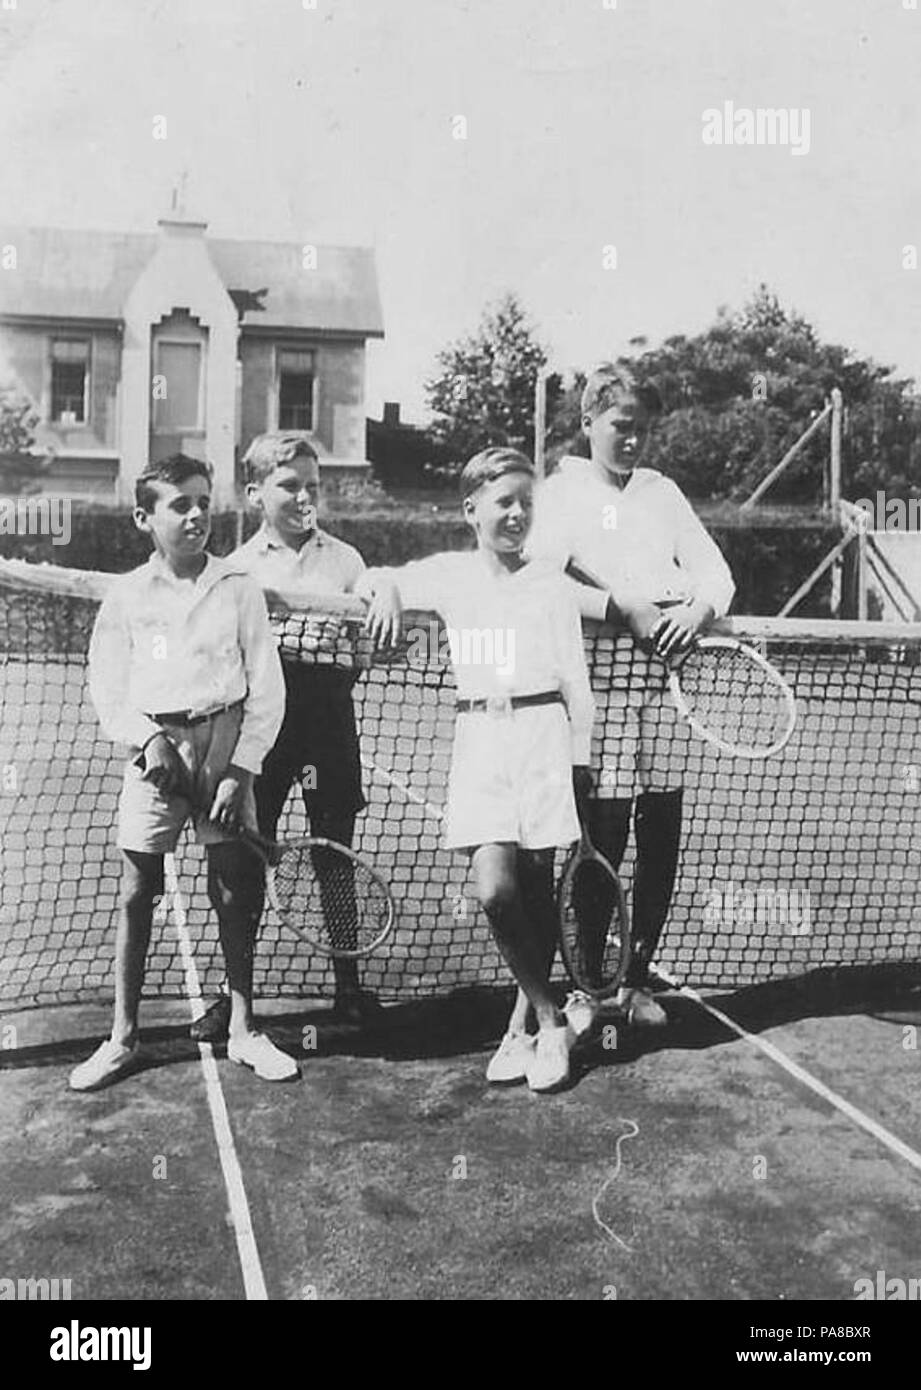 50 Chicos tenis atl rosario 1925 Stock Photo